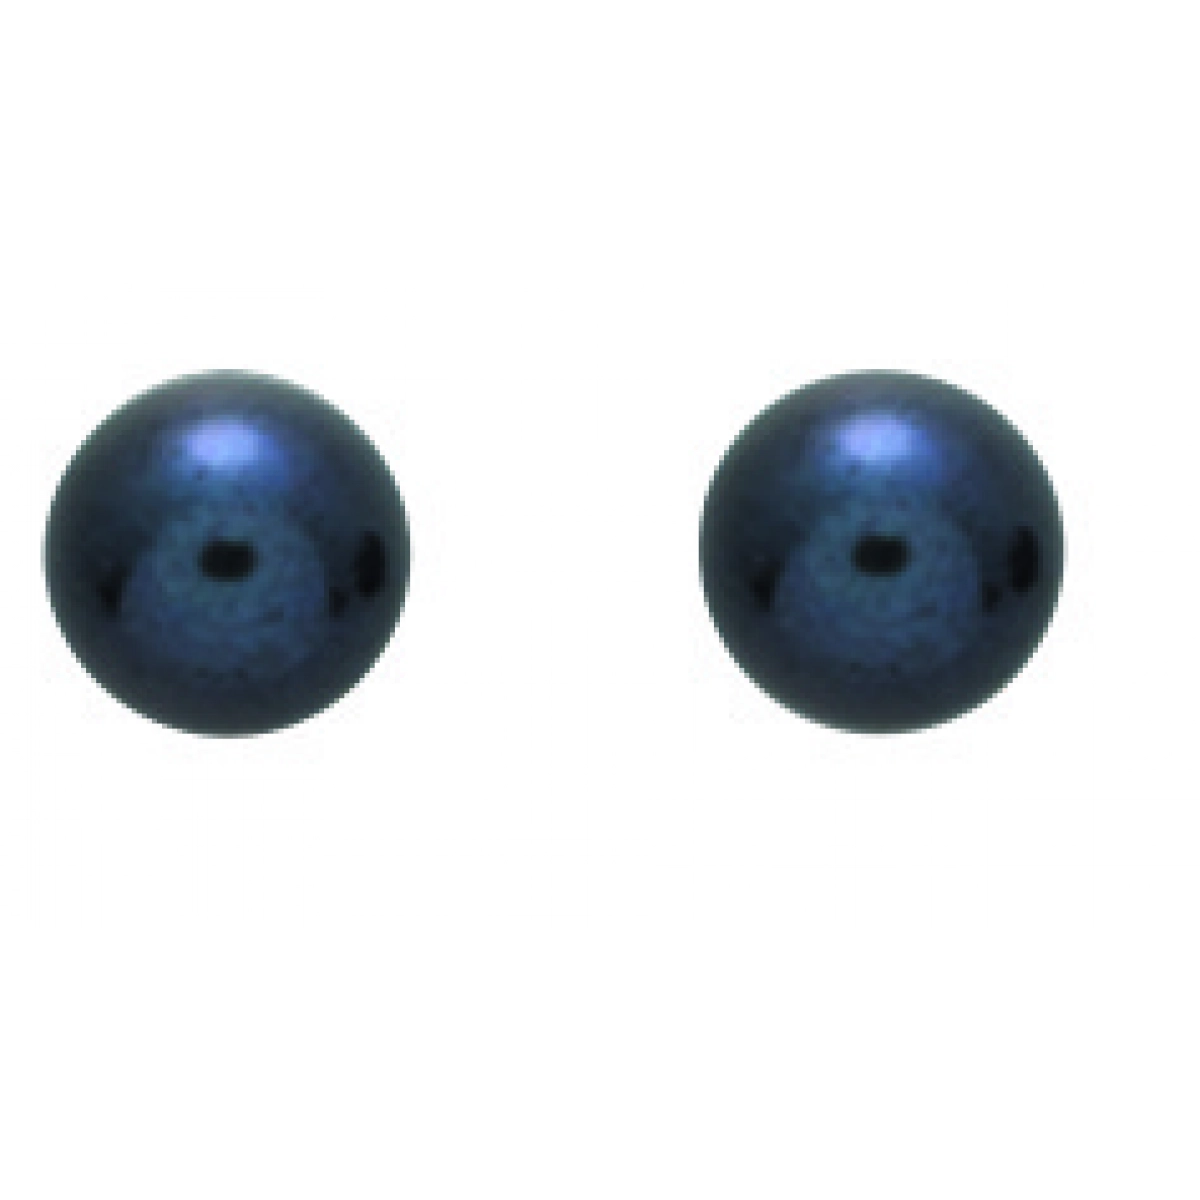 Earrings pair cult FW Black Pearl 6mm 9K YG  Lua Blanca  293014.P0.0